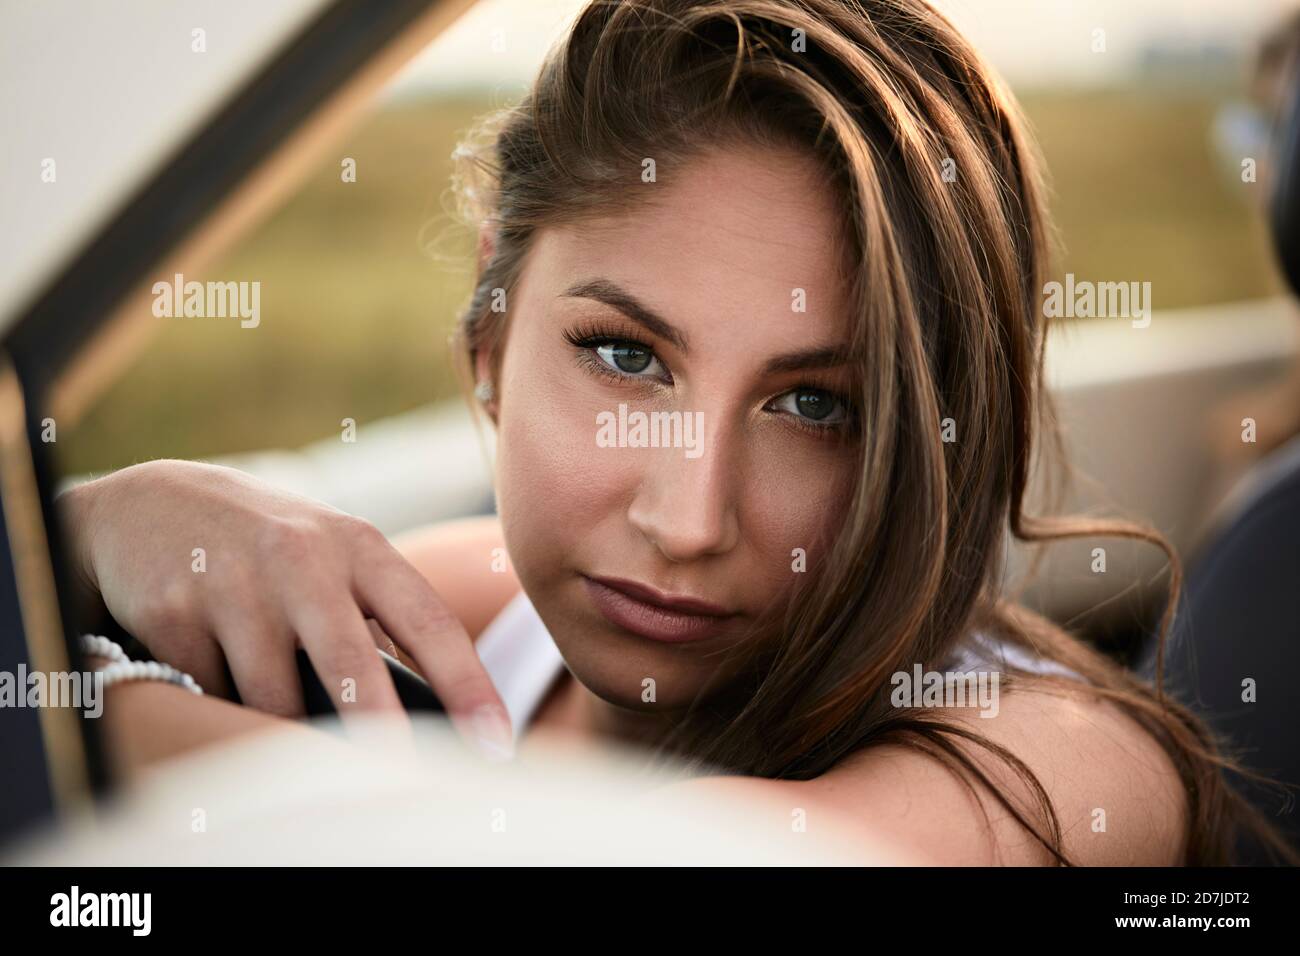 Belle jeune femme assise dans une voiture convertible Banque D'Images